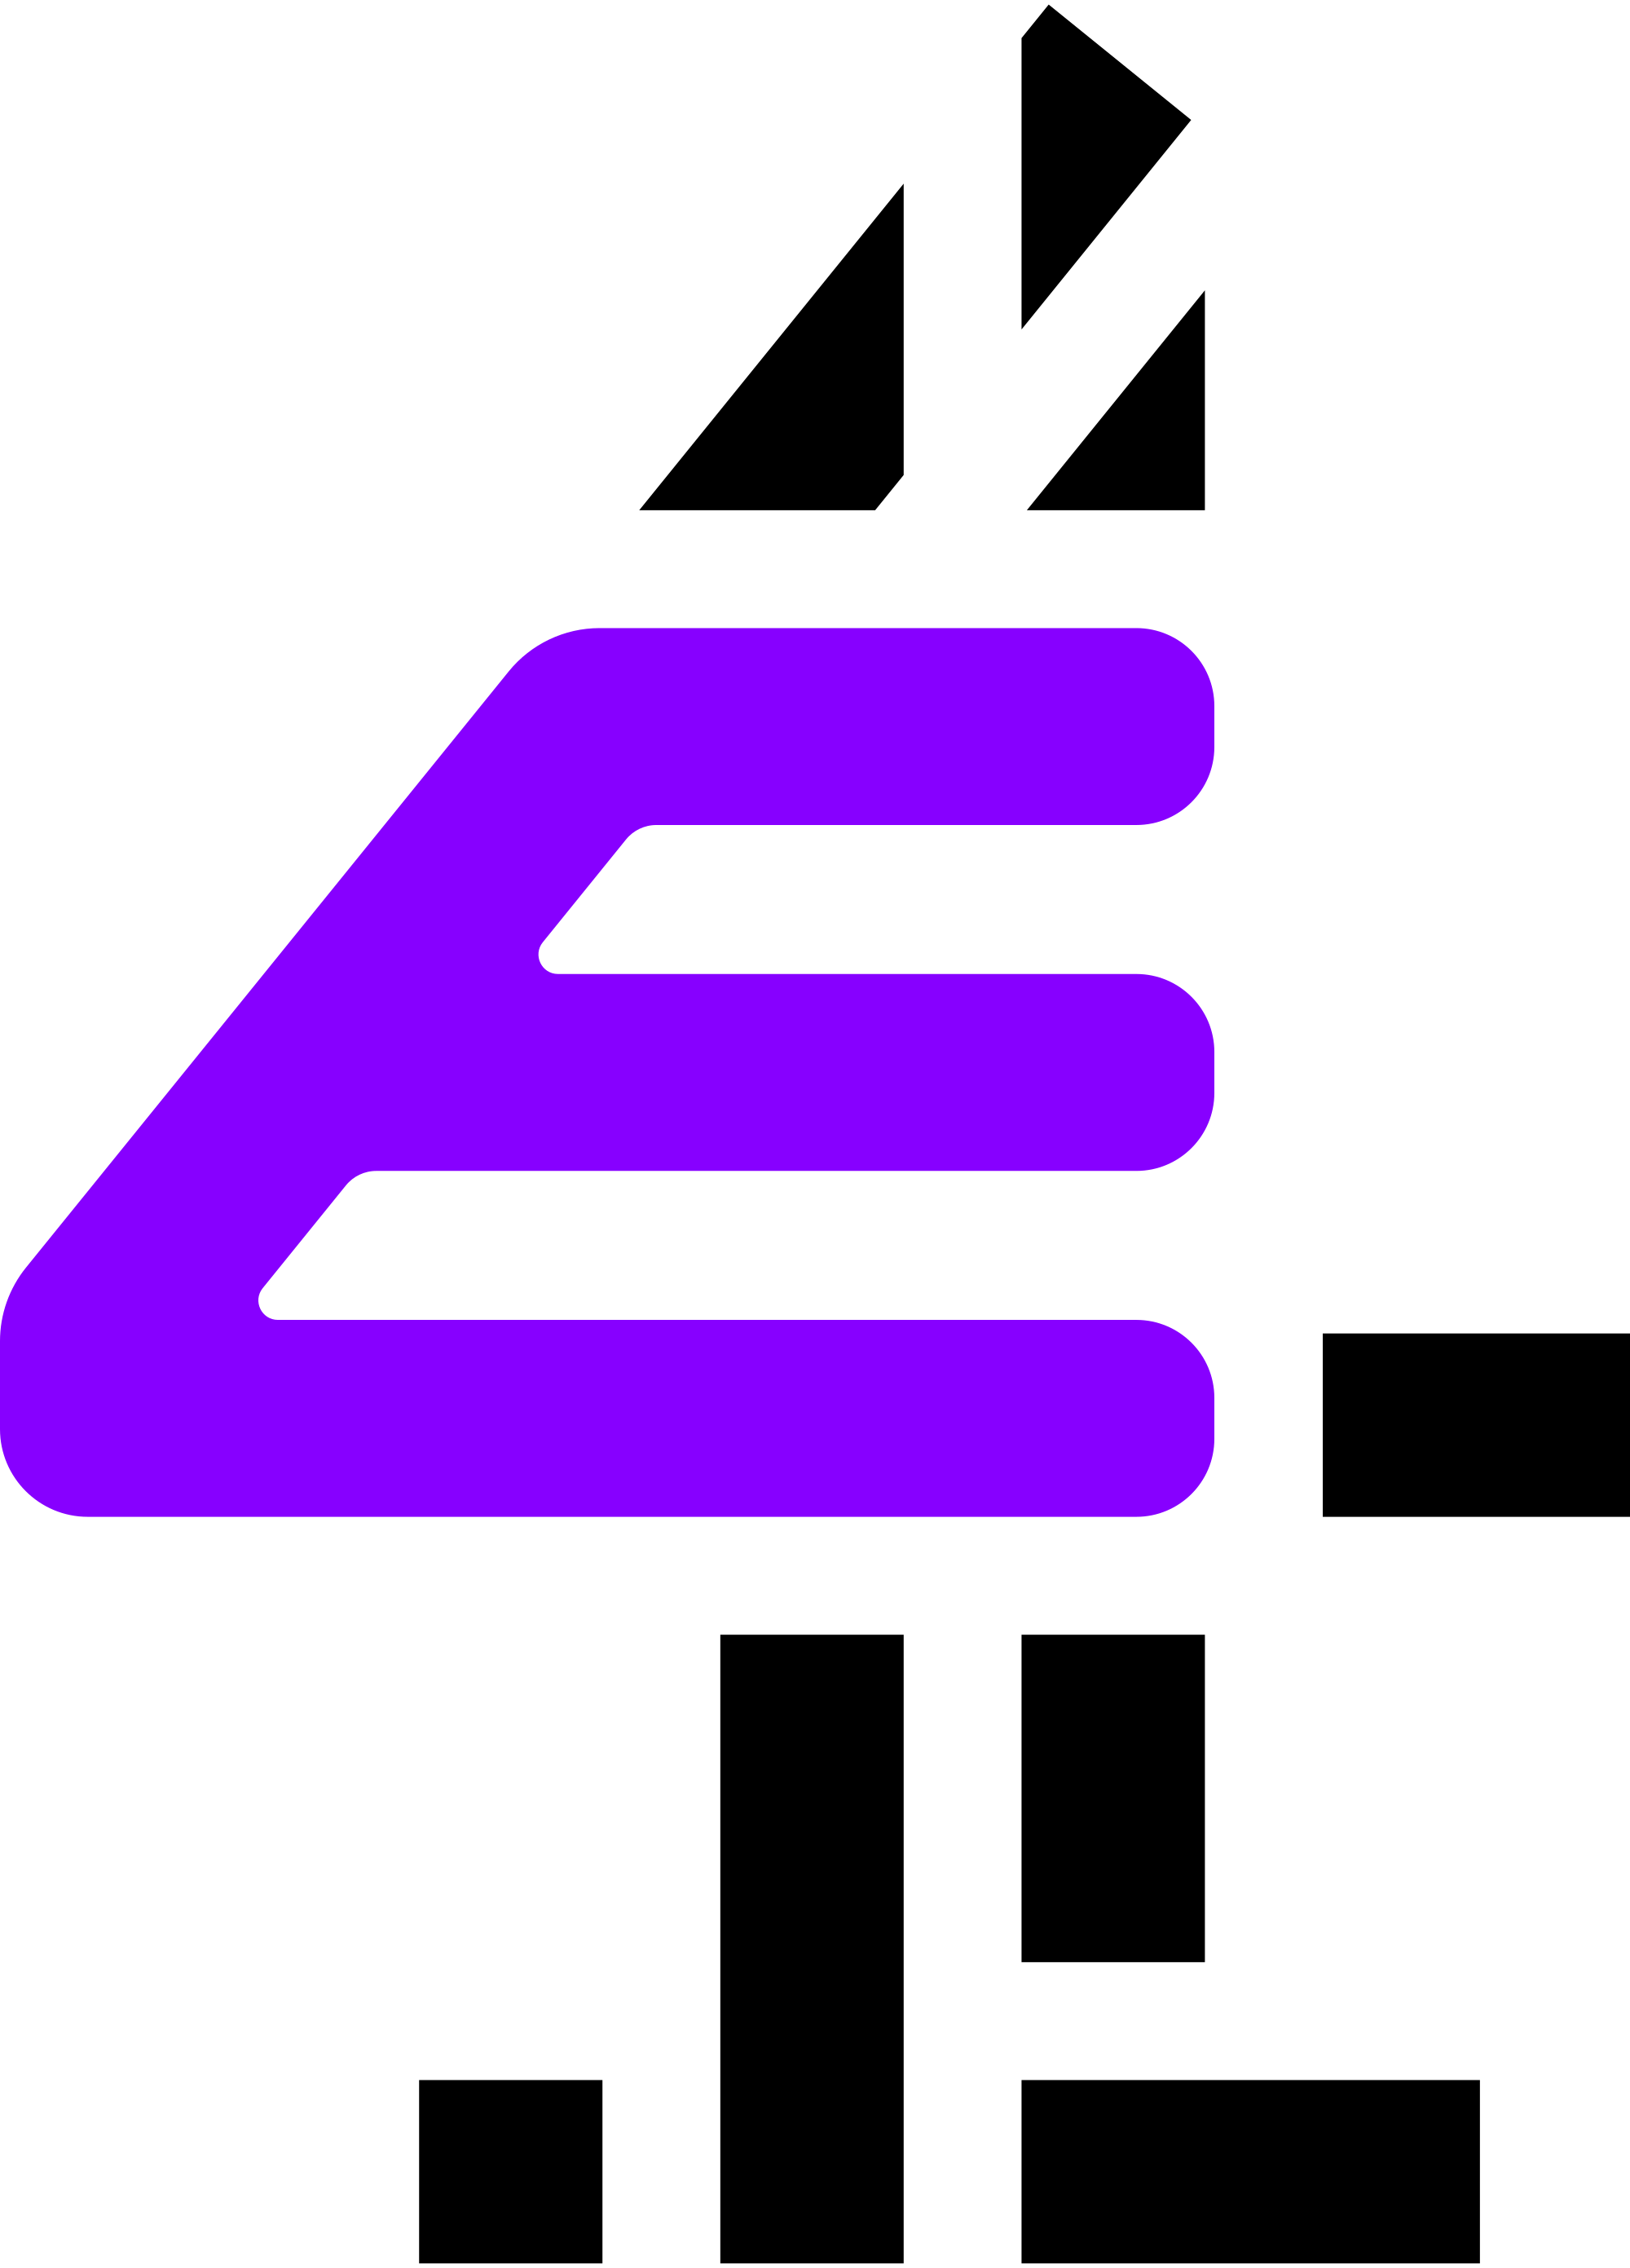 E4 - network